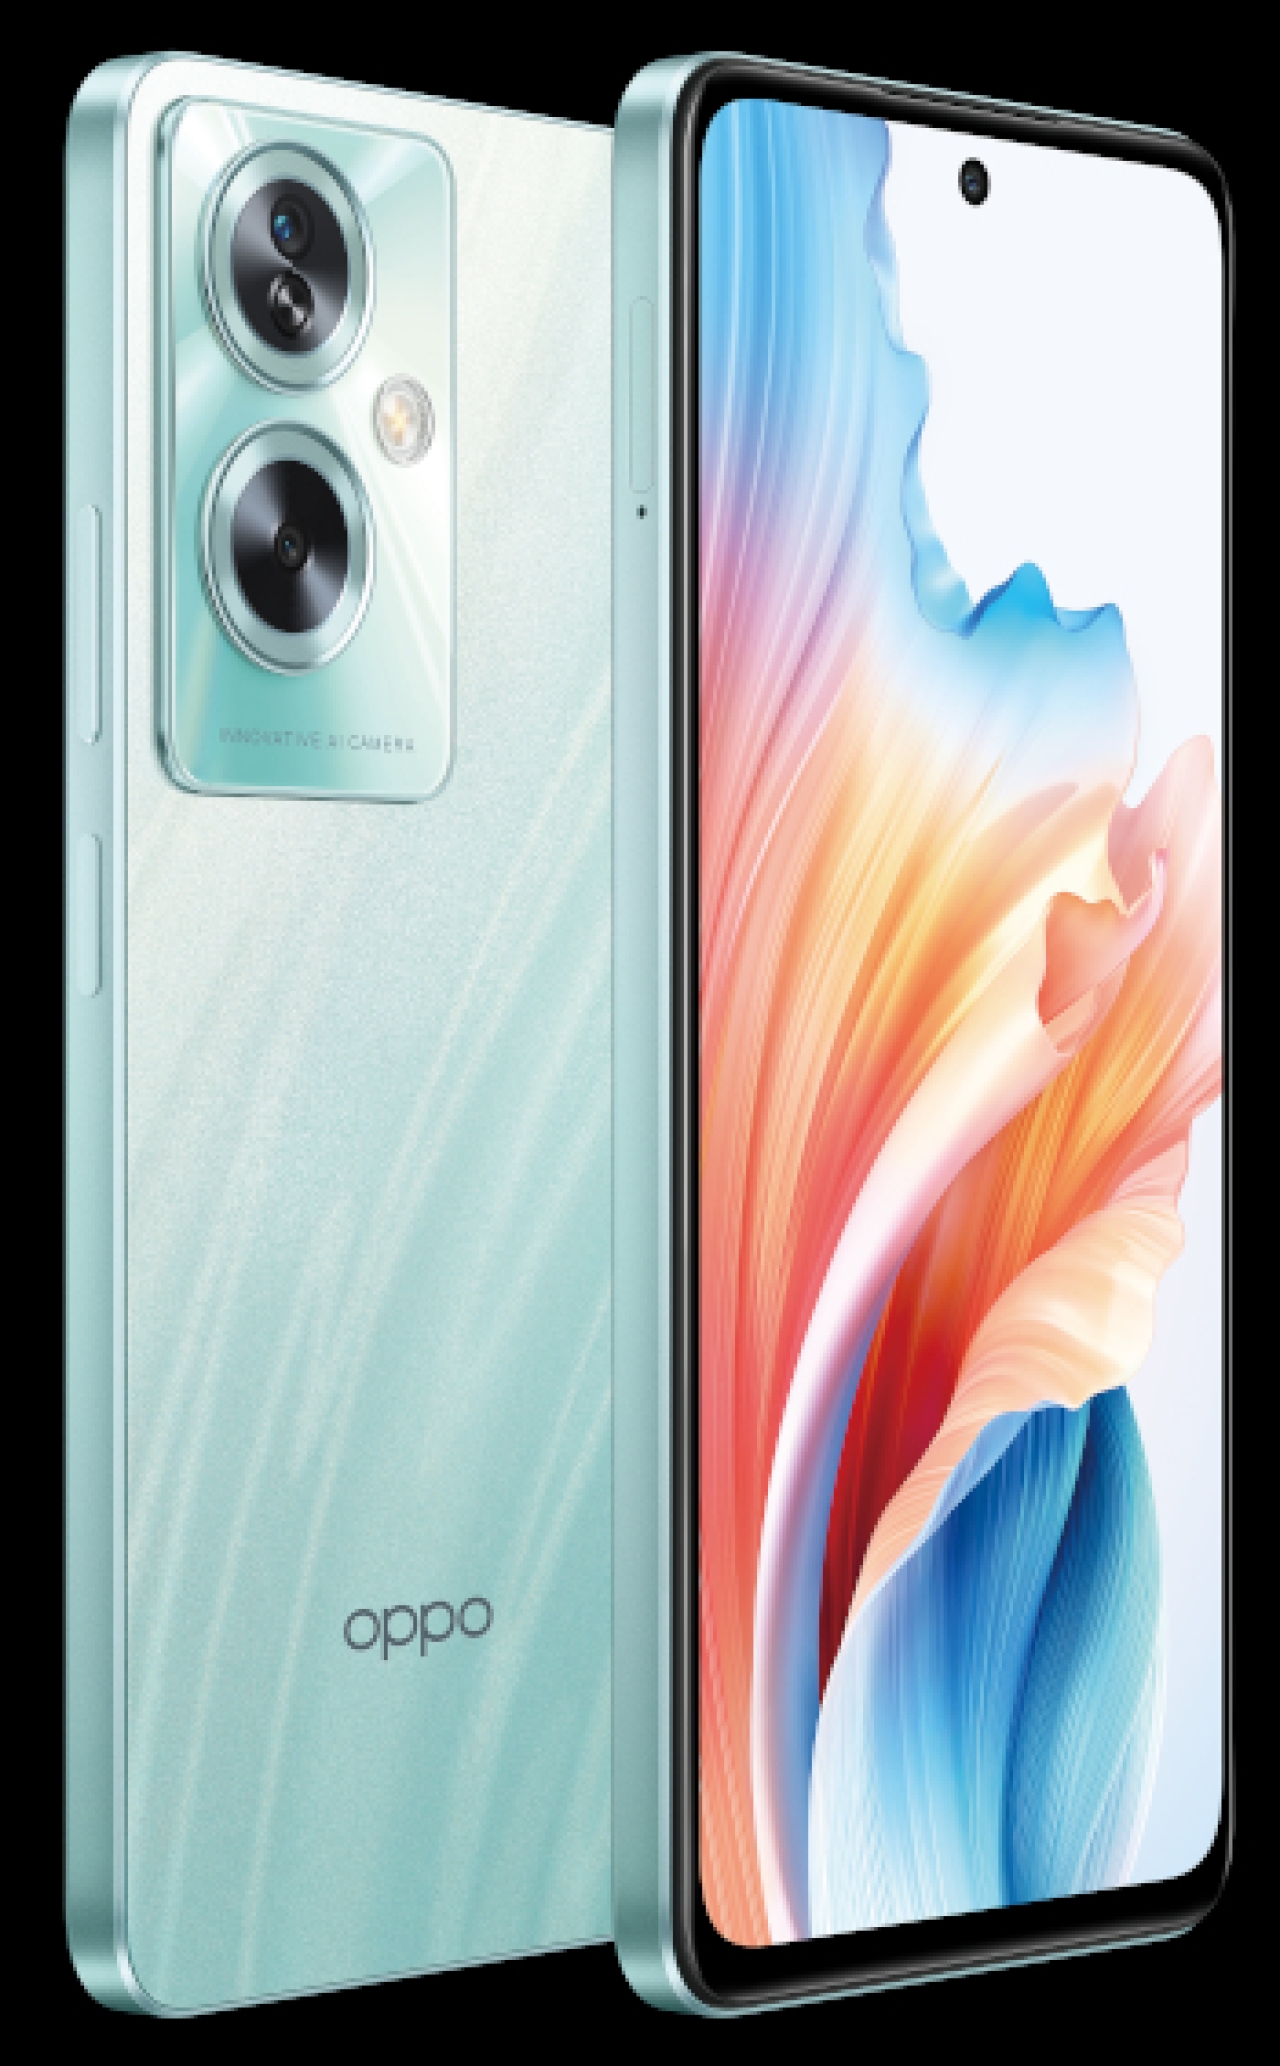 OPPO A79 5G: Latest - Softwar3